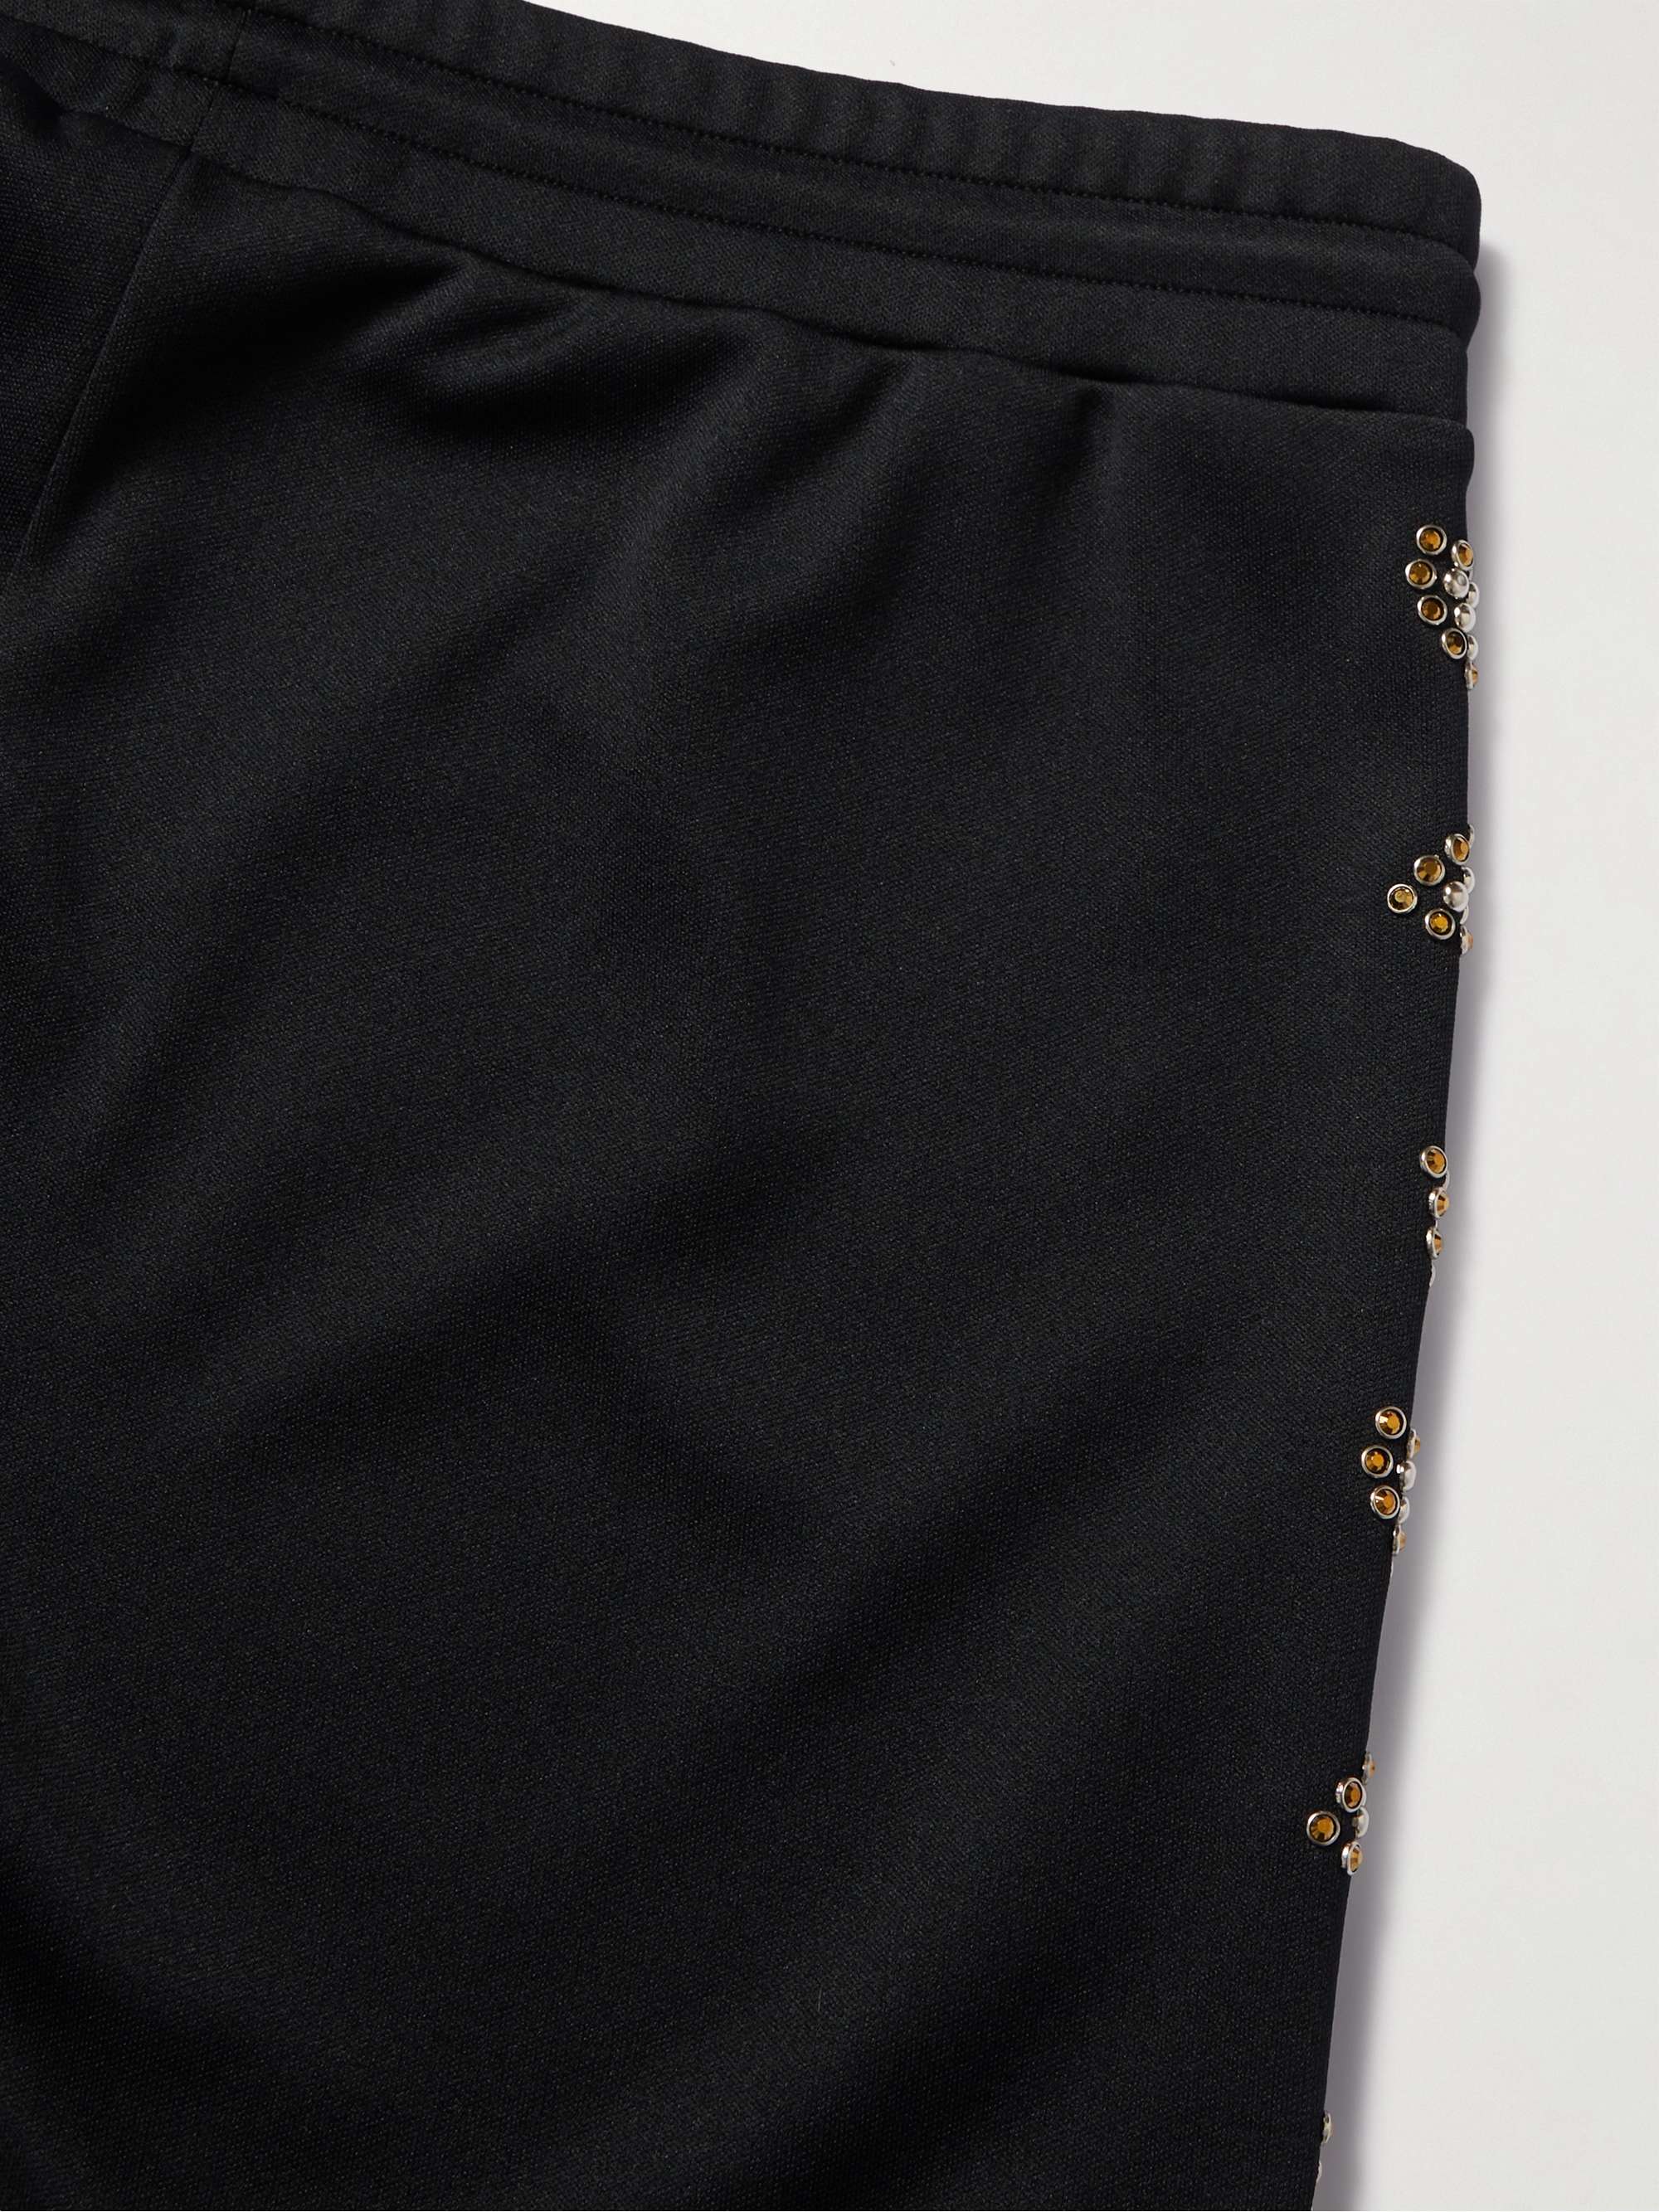 CELINE HOMME Embellished Logo-Print Jersey Sweatpants